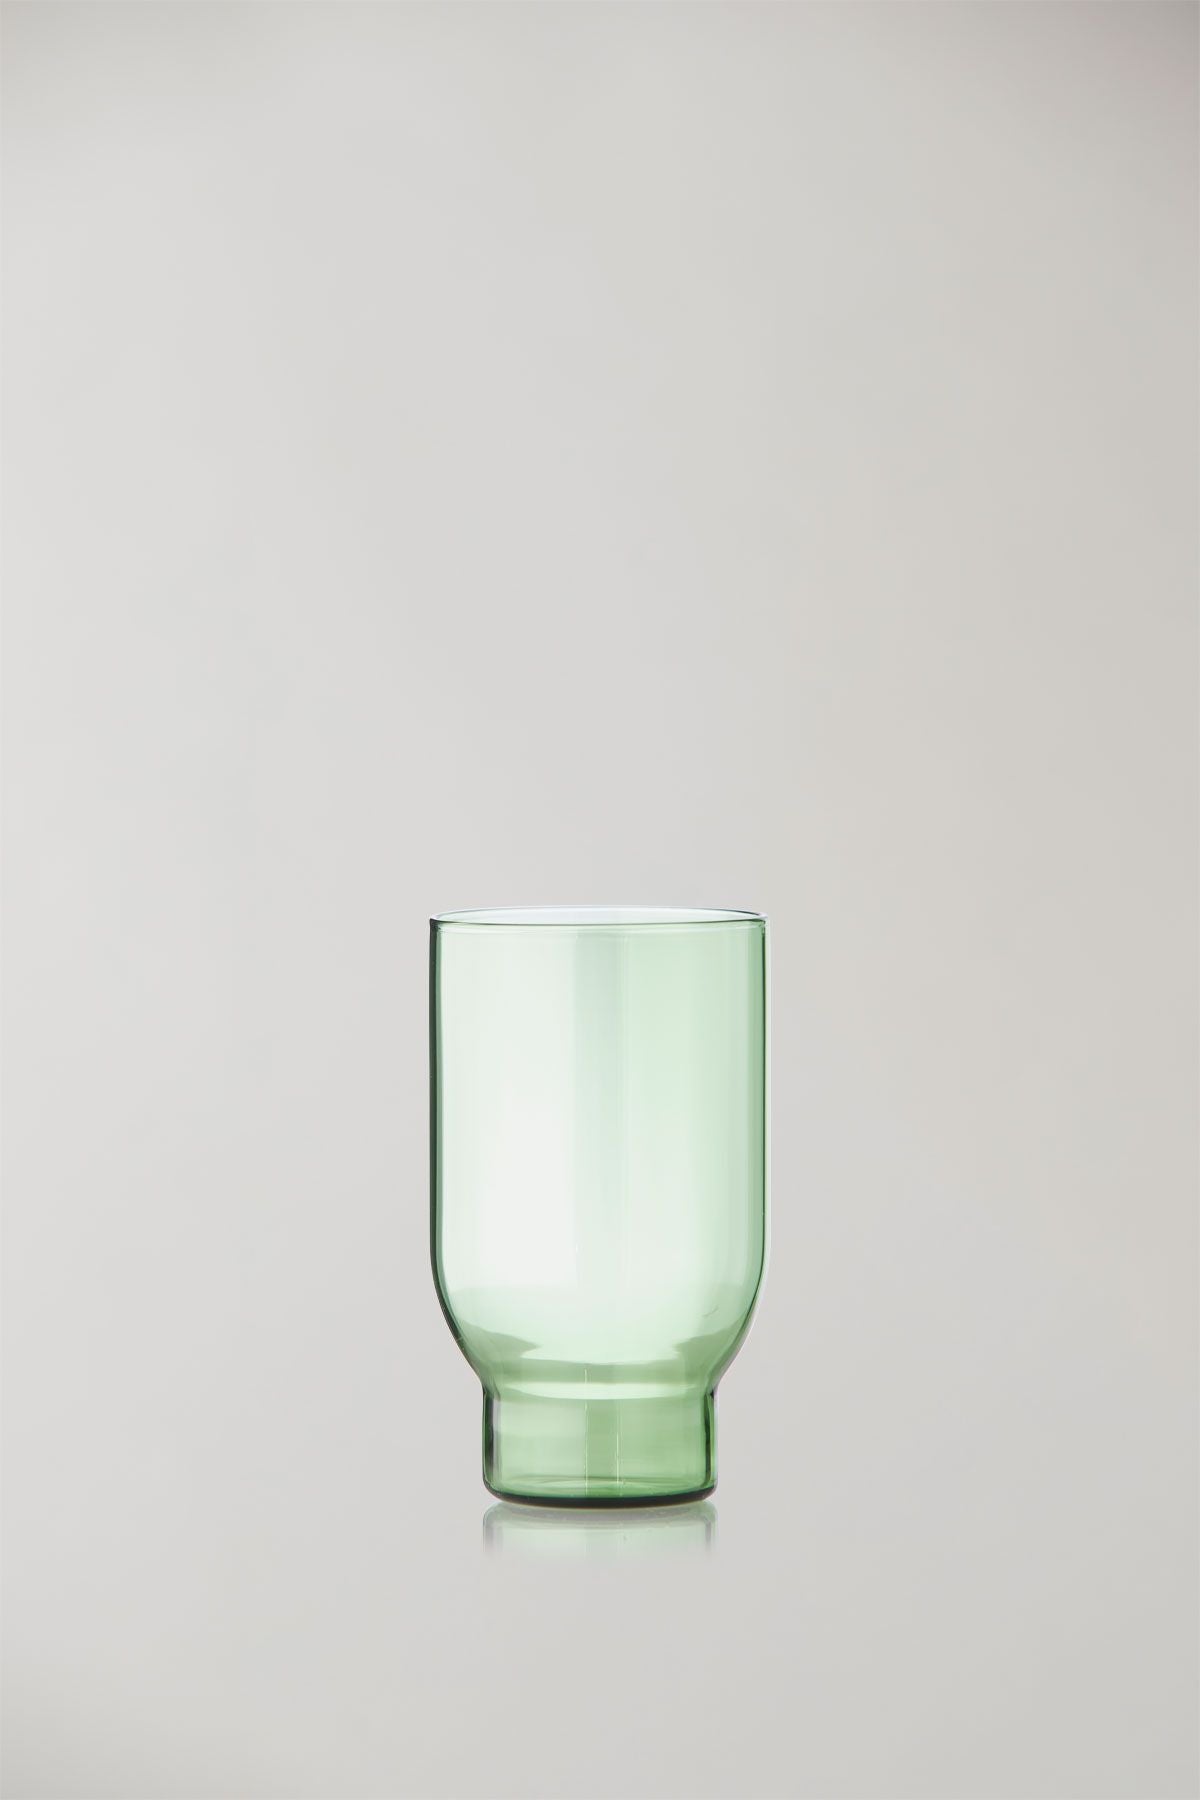 Studio über Glaswaren -Set von 2 Wassergläser, grün